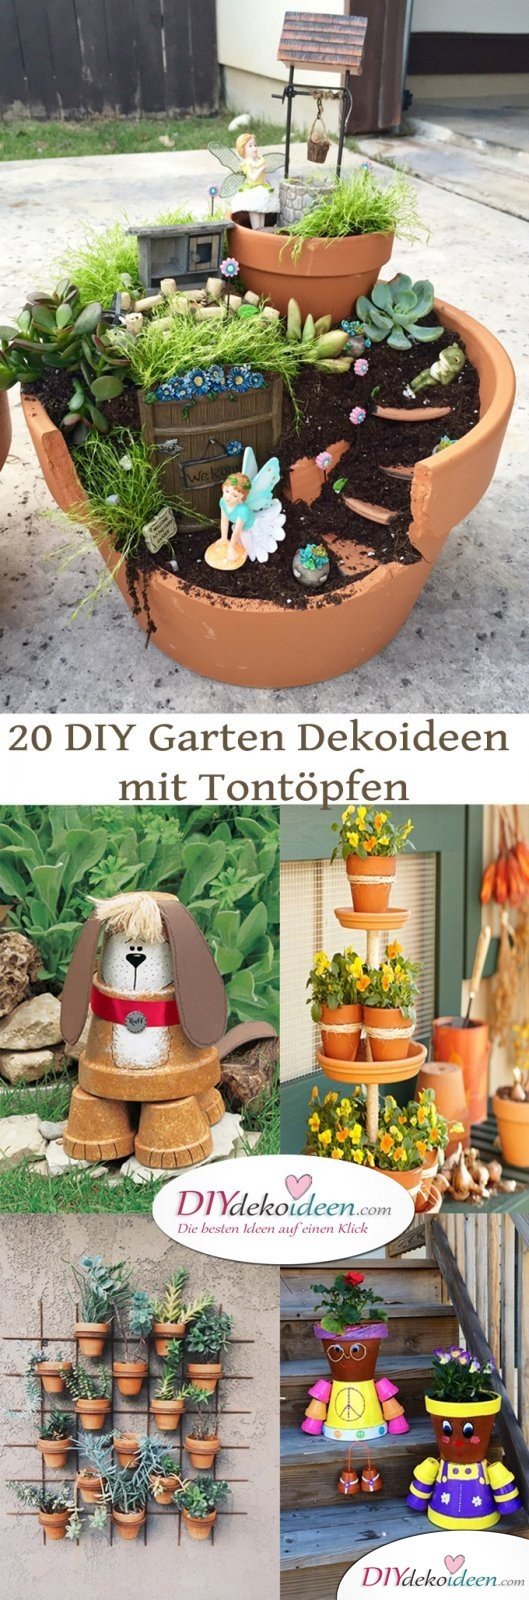 20 DIY Garten Dekoideen mit Tontöpfen